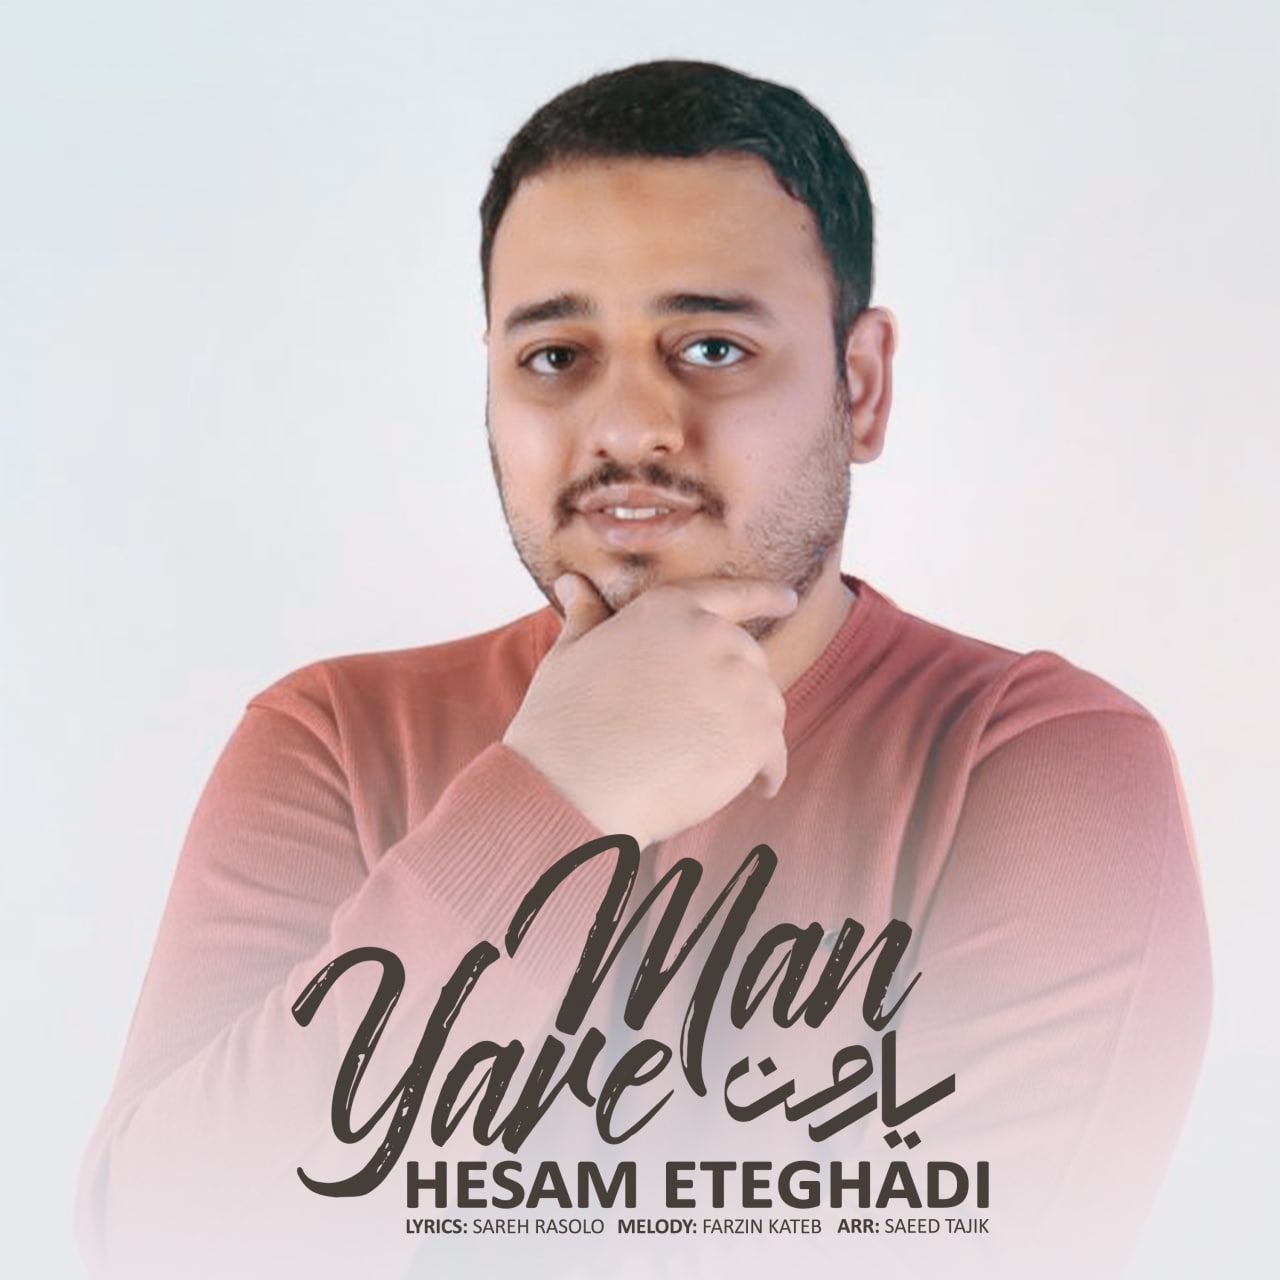 Hesam Eteghadi – Yare Man